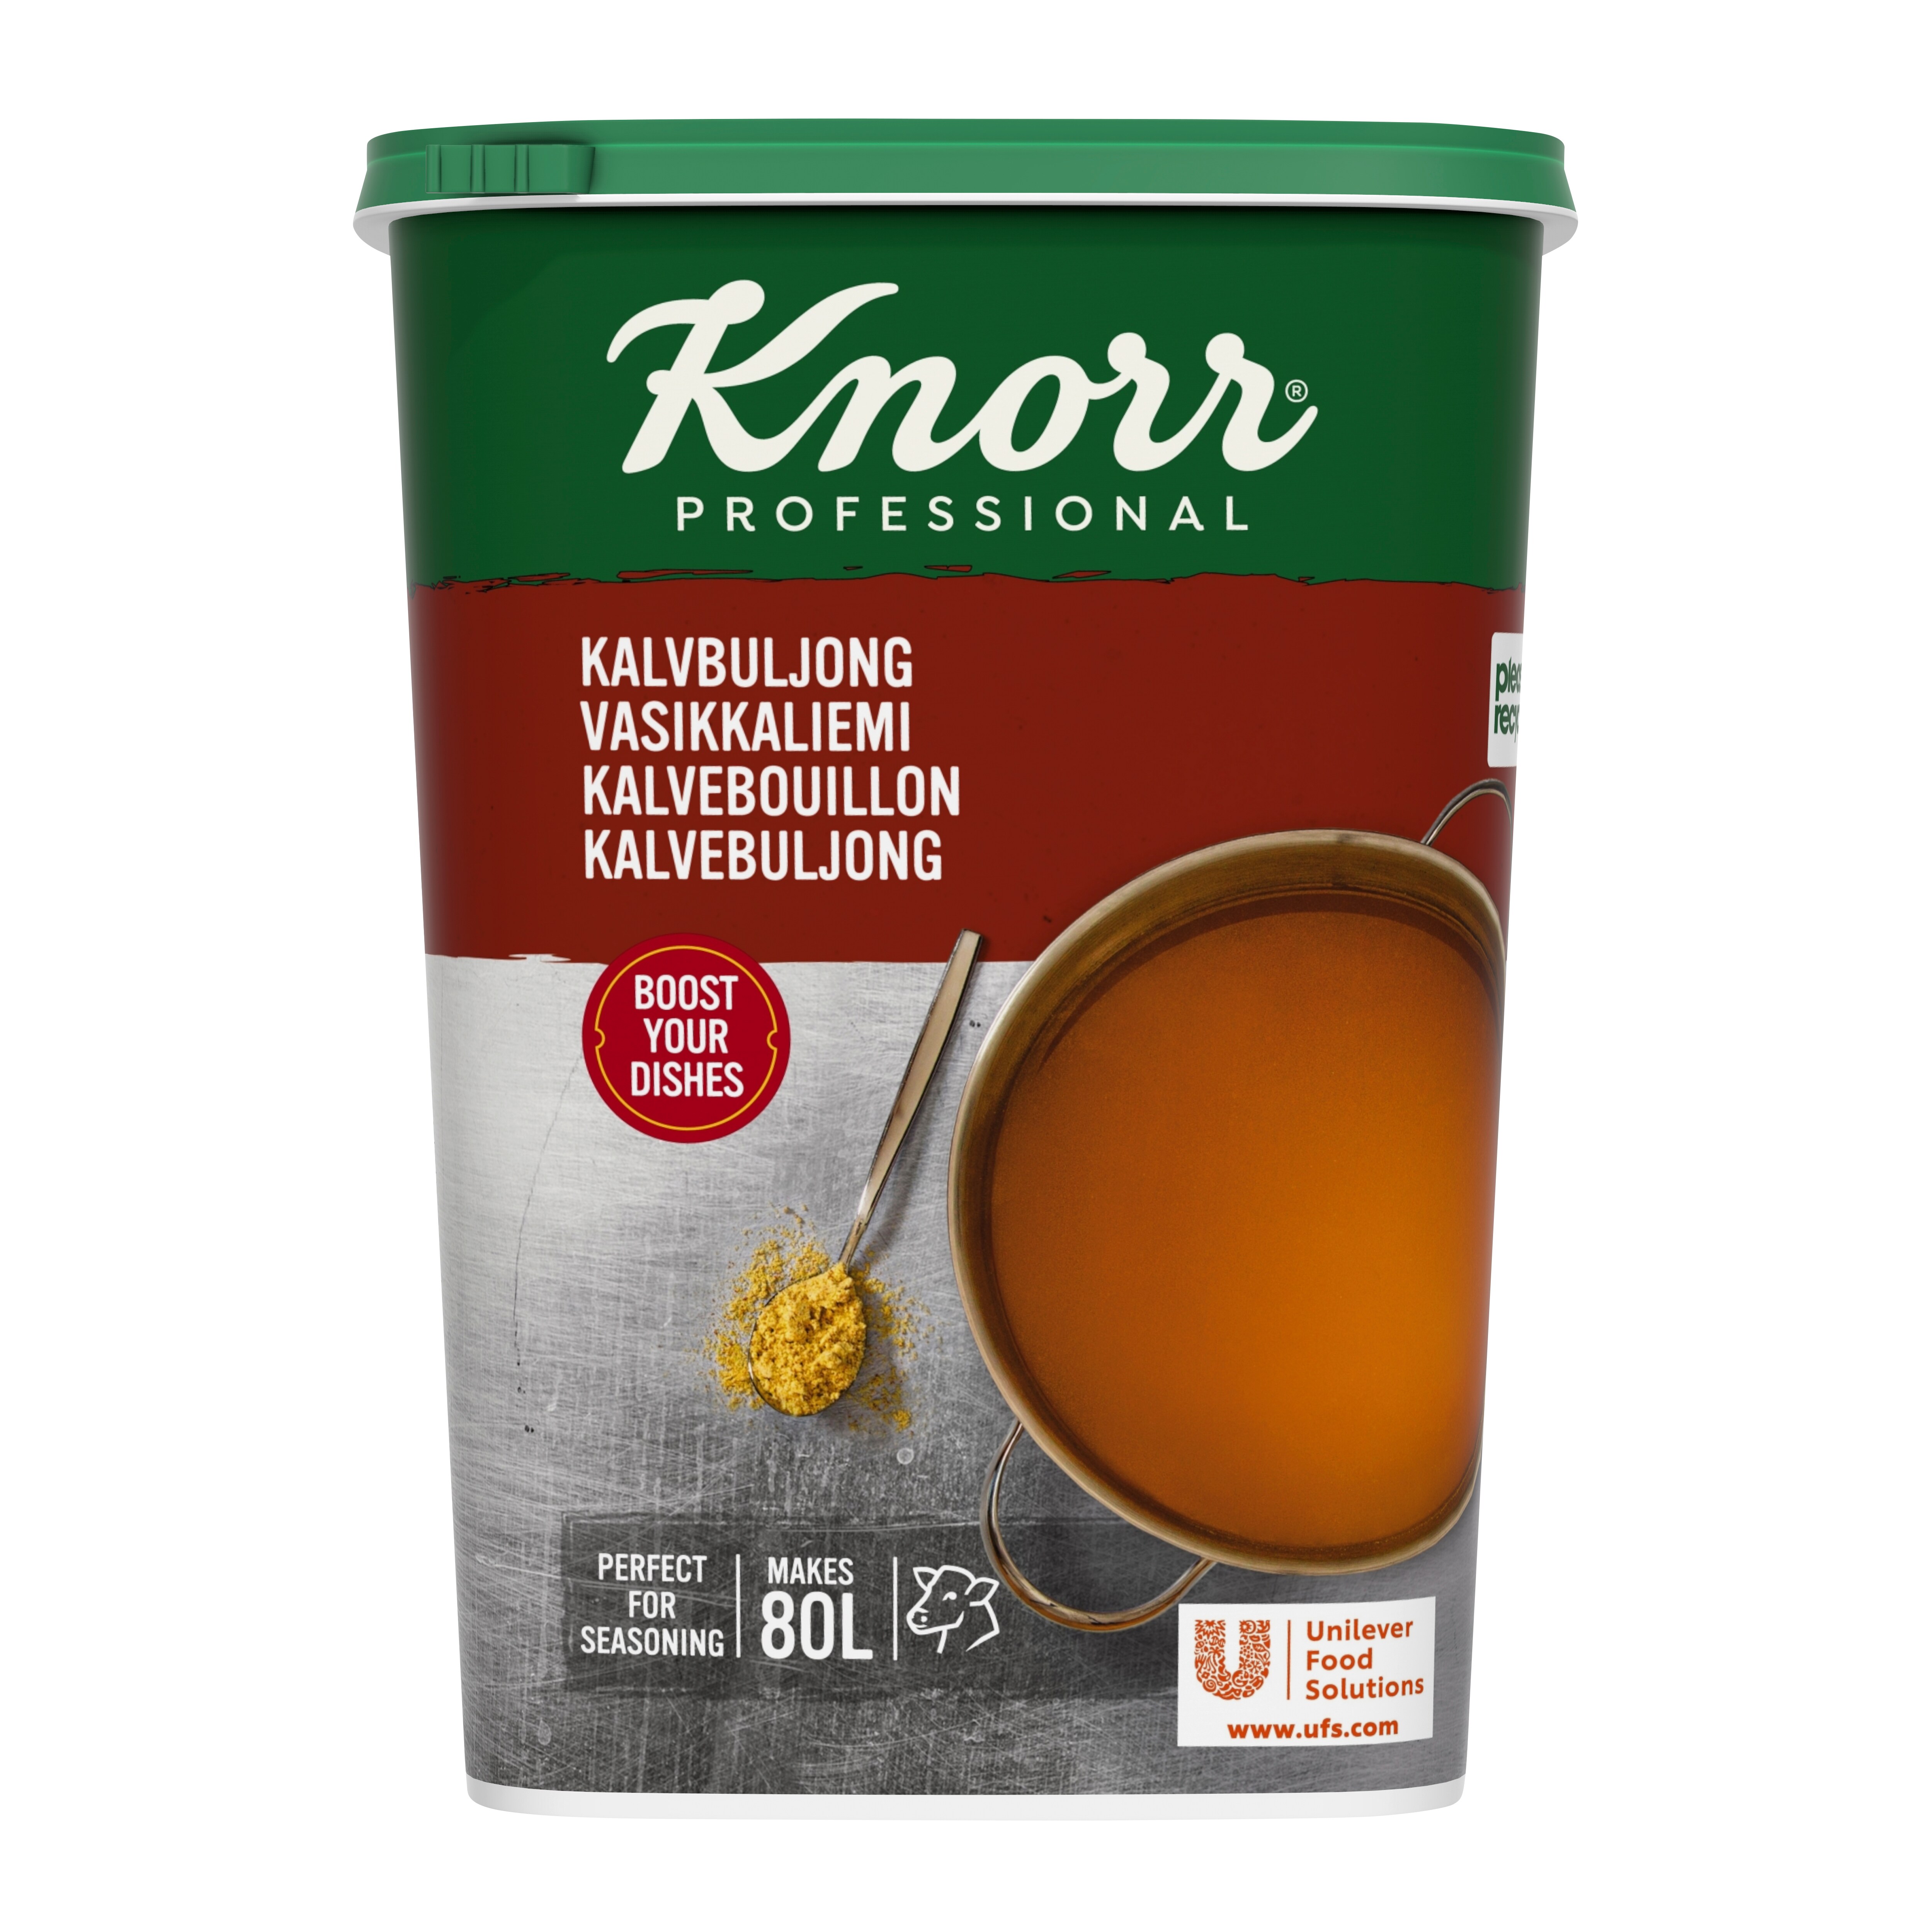 Knorr Kalvebouillon, granulat 1,2 kg / 80 l - 